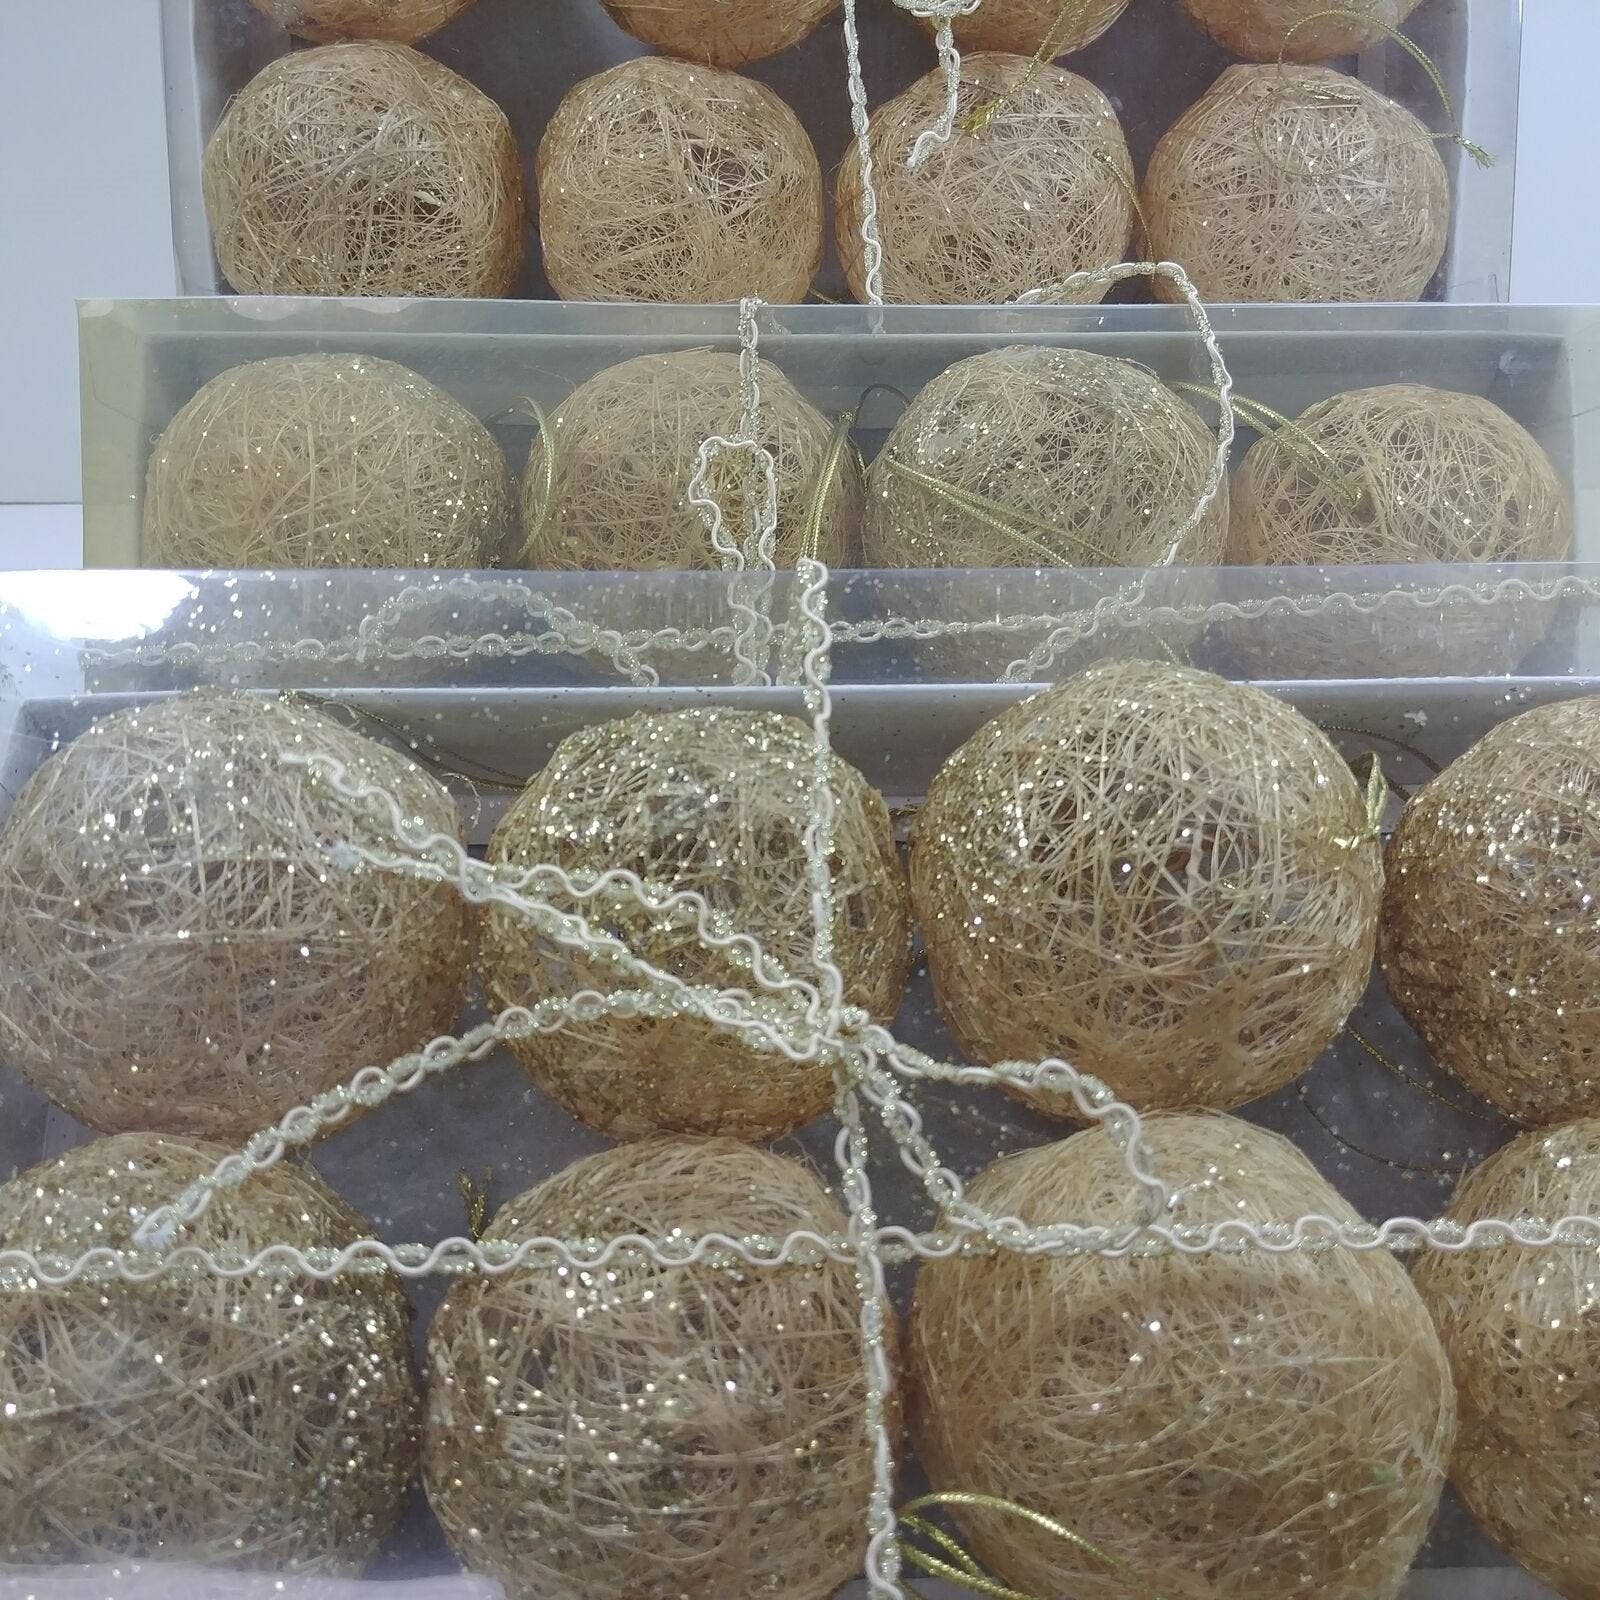 Decorative Gold Spun Grass Raffia Balls w/ Hanger Boxed Set of 8 pcs. NIB